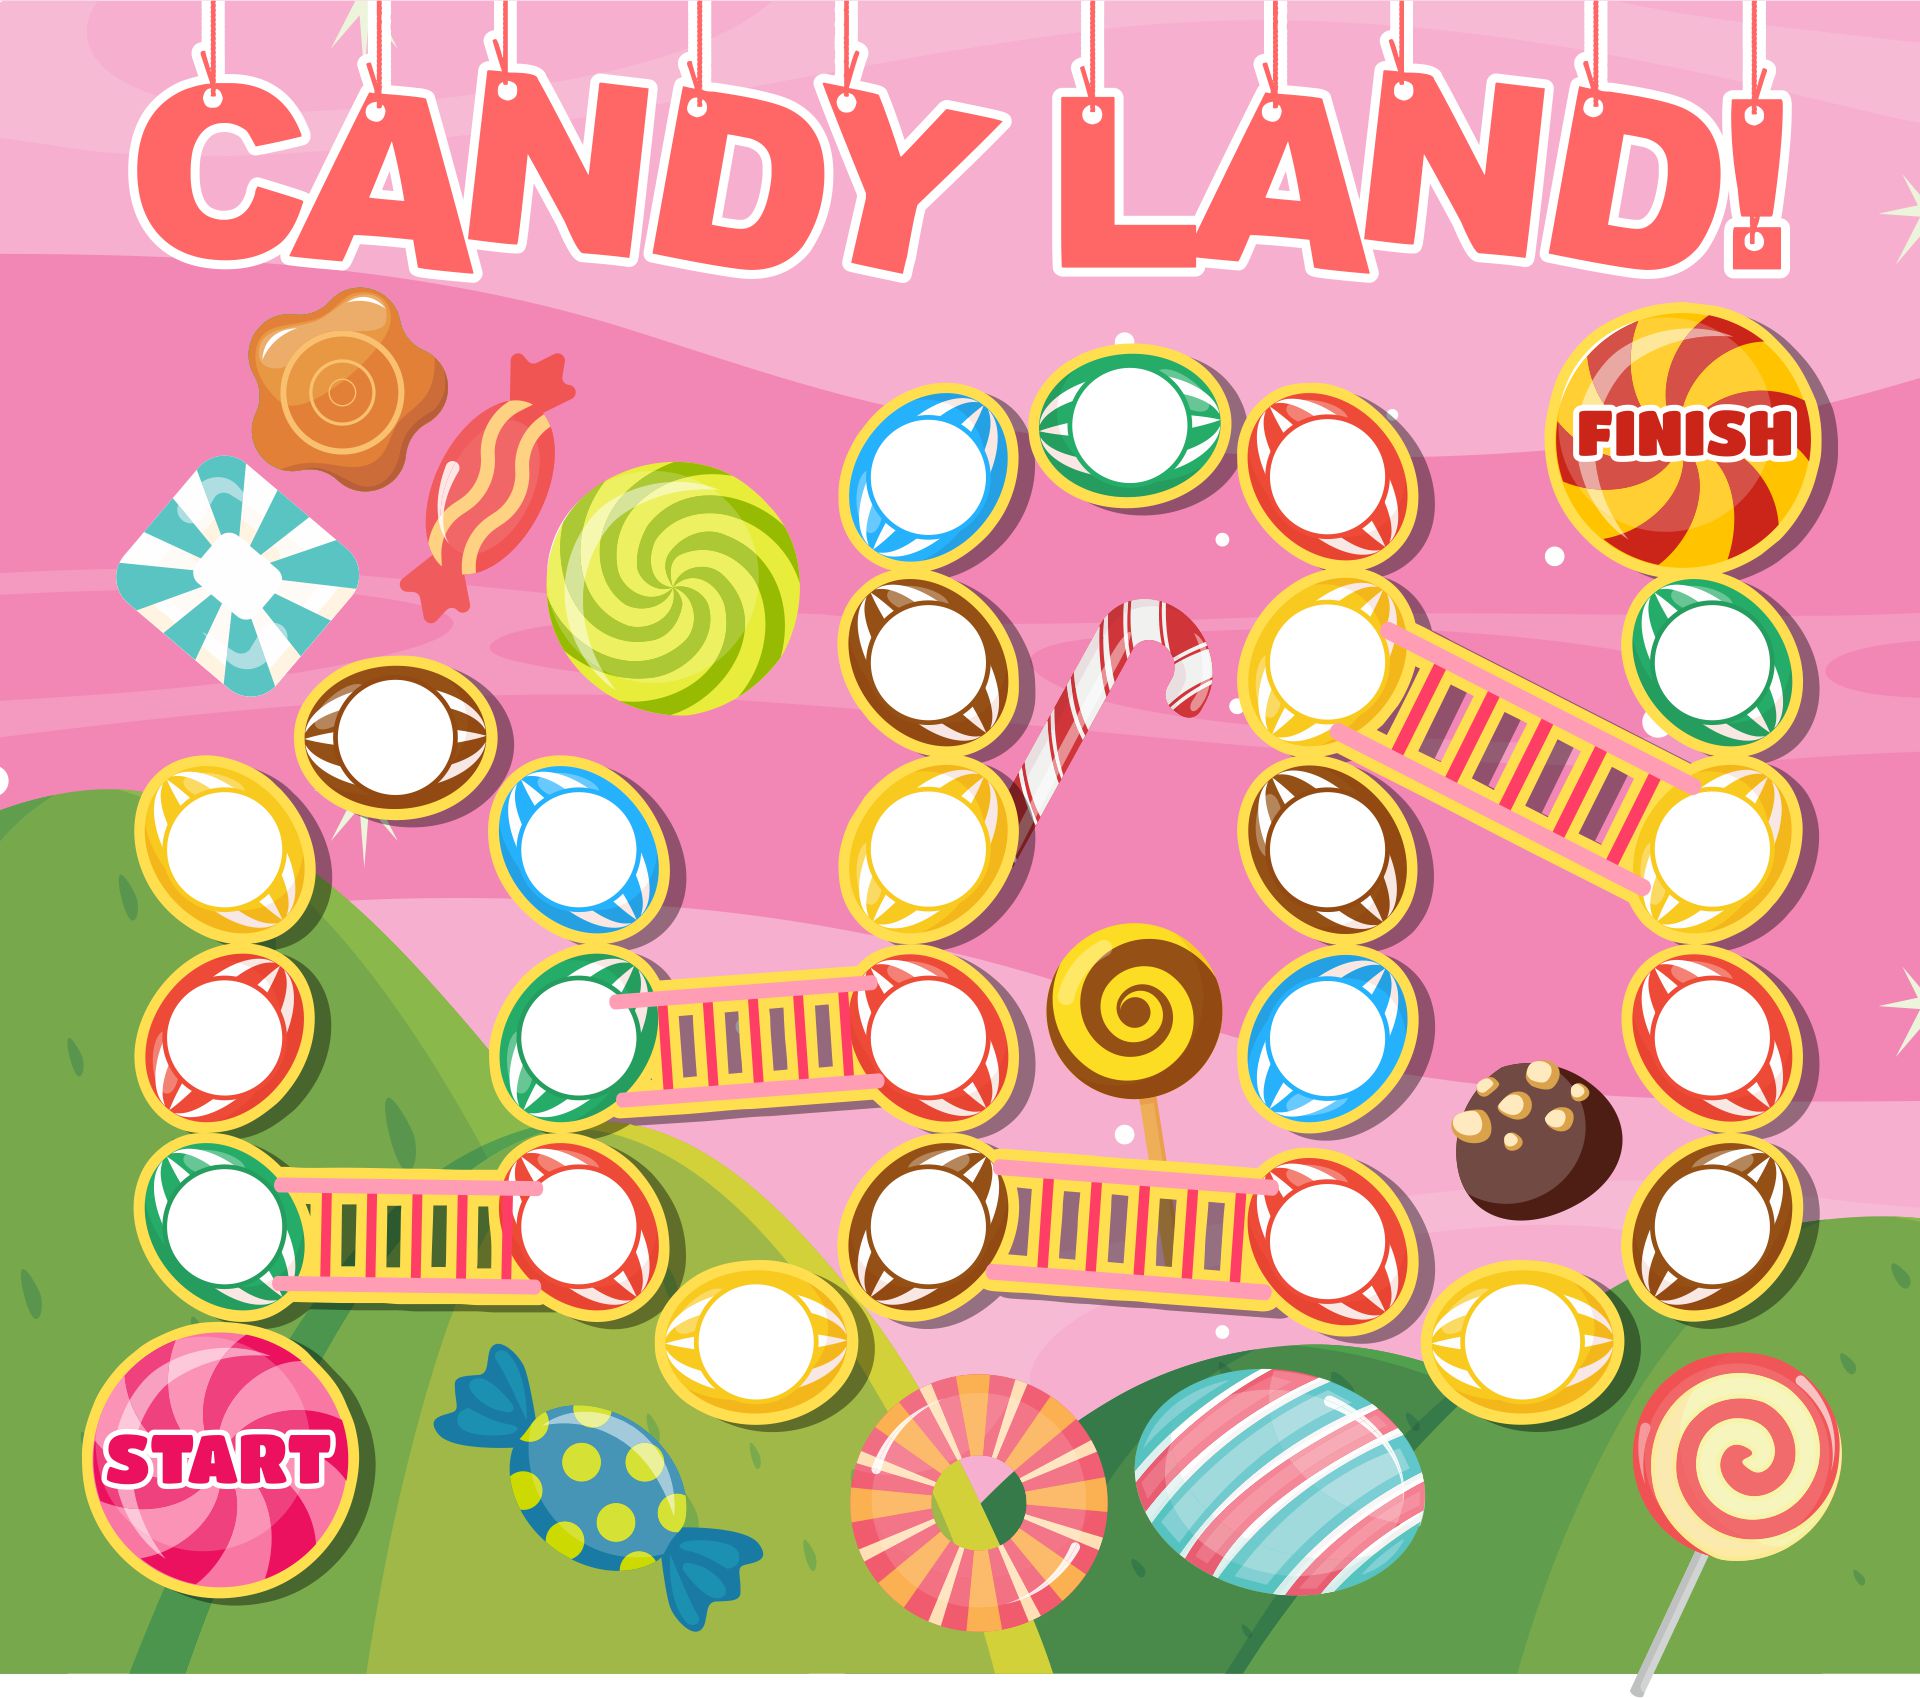 4-best-images-of-printable-candyland-board-game-candyland-game-board